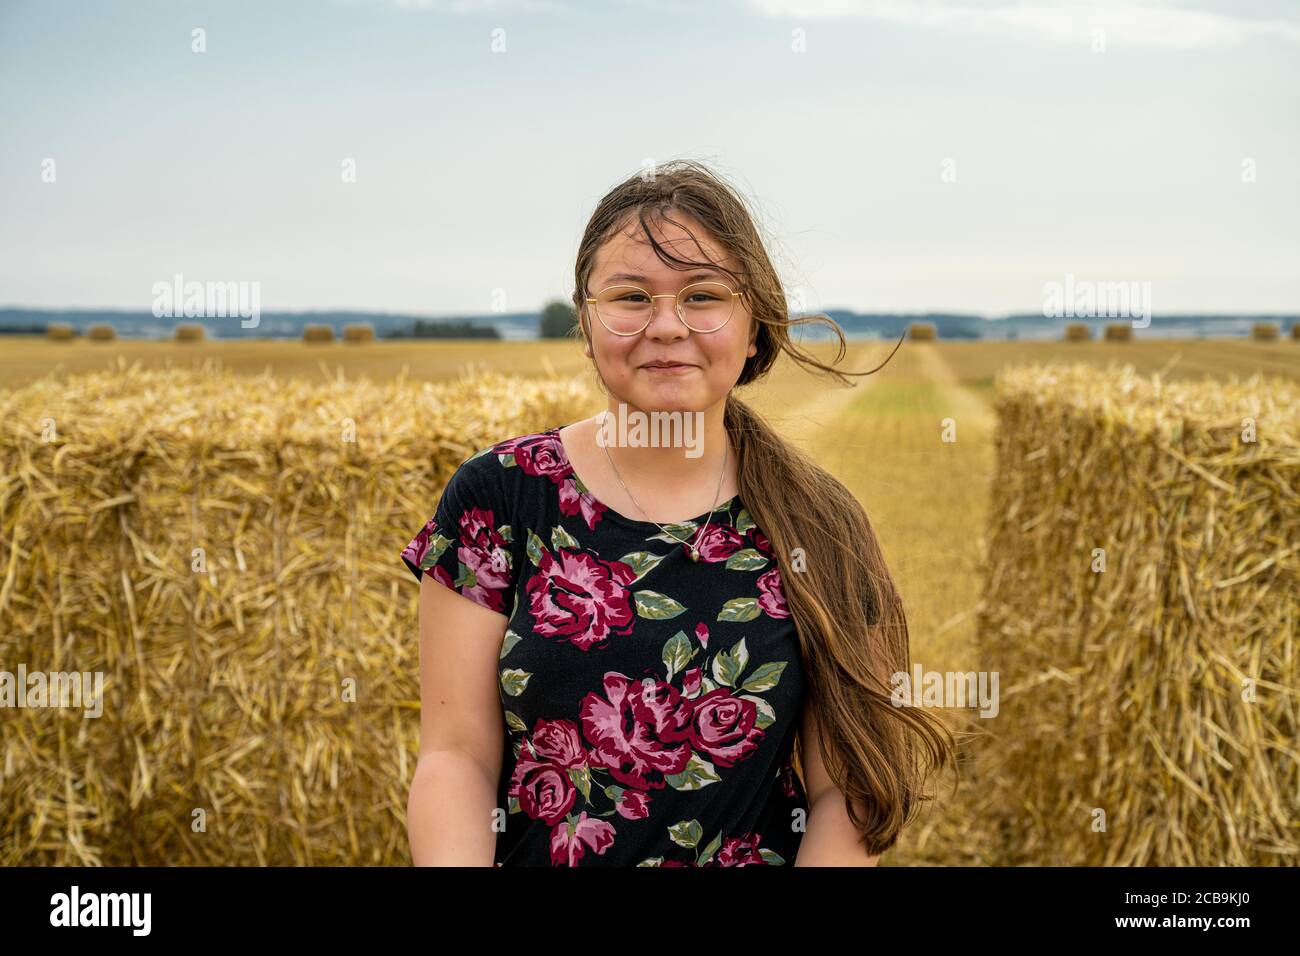 Une jeune fille avec de longs cheveux bruns fait face à l'appareil photo et sourit. Balles de paille dans un champ nouvellement récolté en arrière-plan Banque D'Images